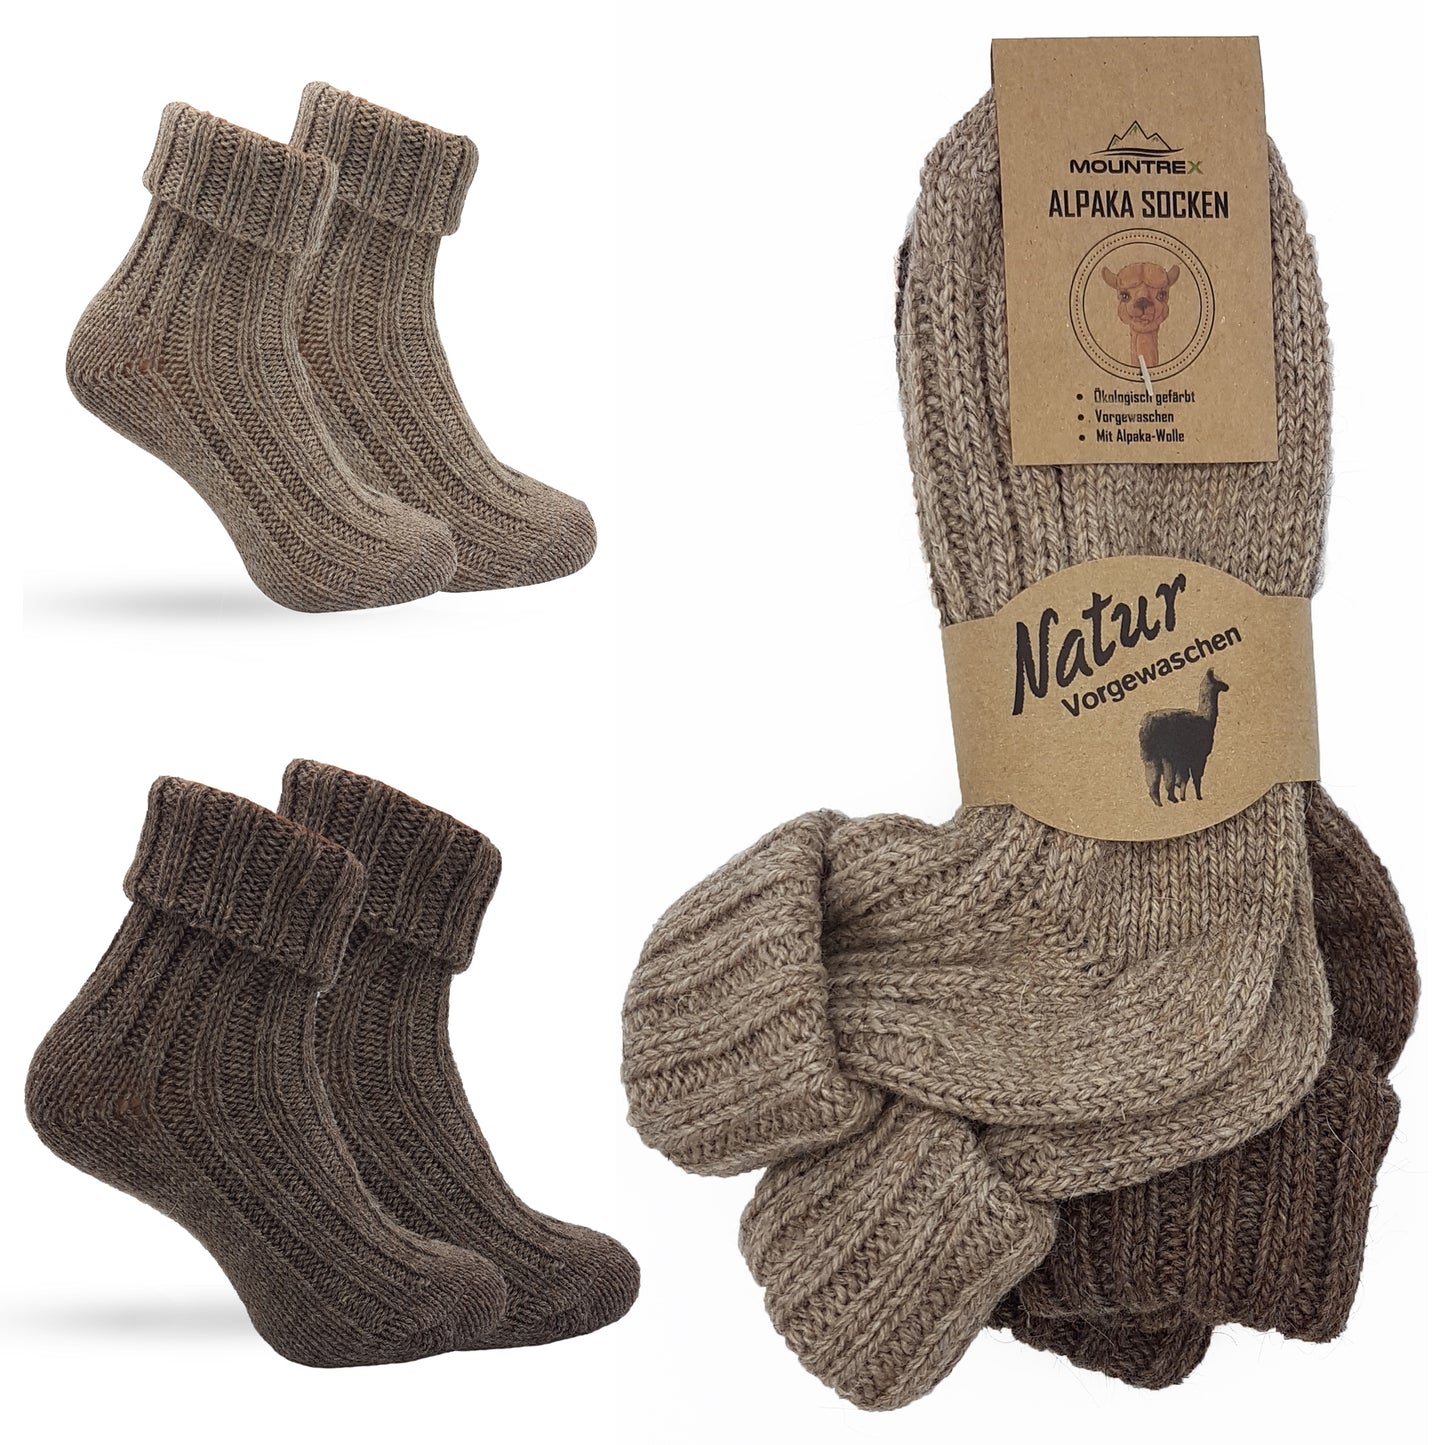 Alpaka Socken, Wollsocken (2 Paar) - Strick, mit Umschlag (Braun/Dunkelbraun)